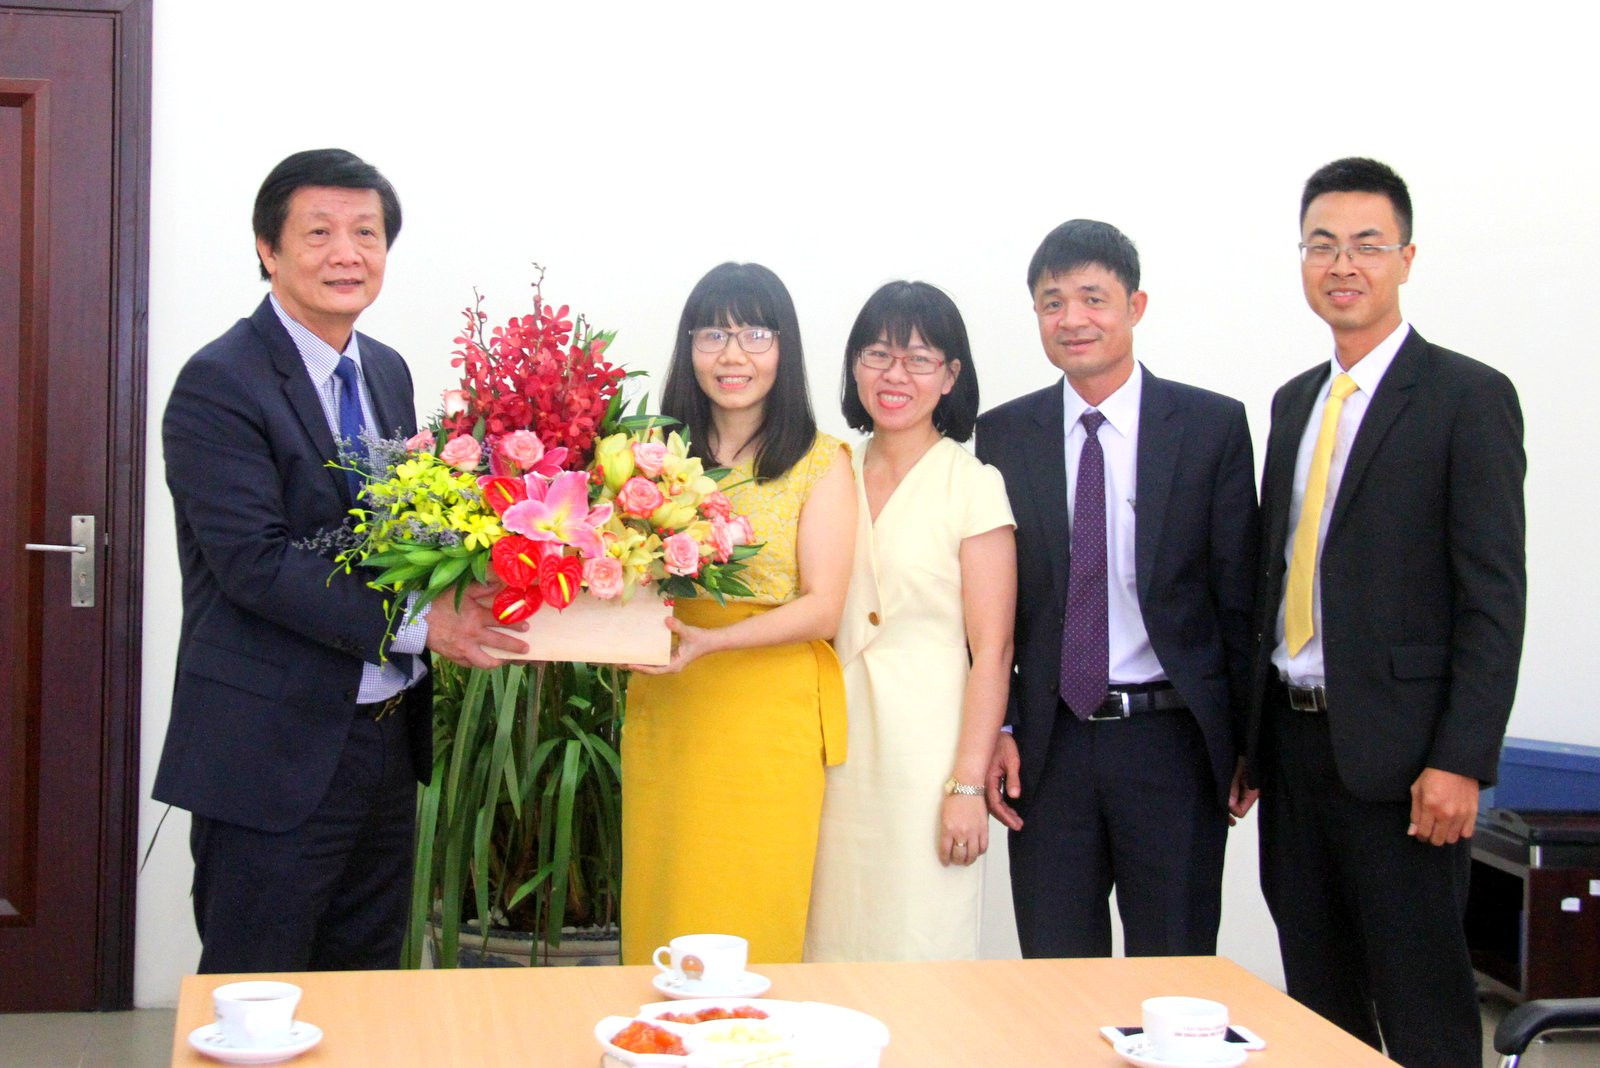  Ông Trần Sơn Hải tặng hoa cho Công ty Cổ phần Vinpearl - cánh chim đầu đàn của ngành du lịch Khánh Hòa